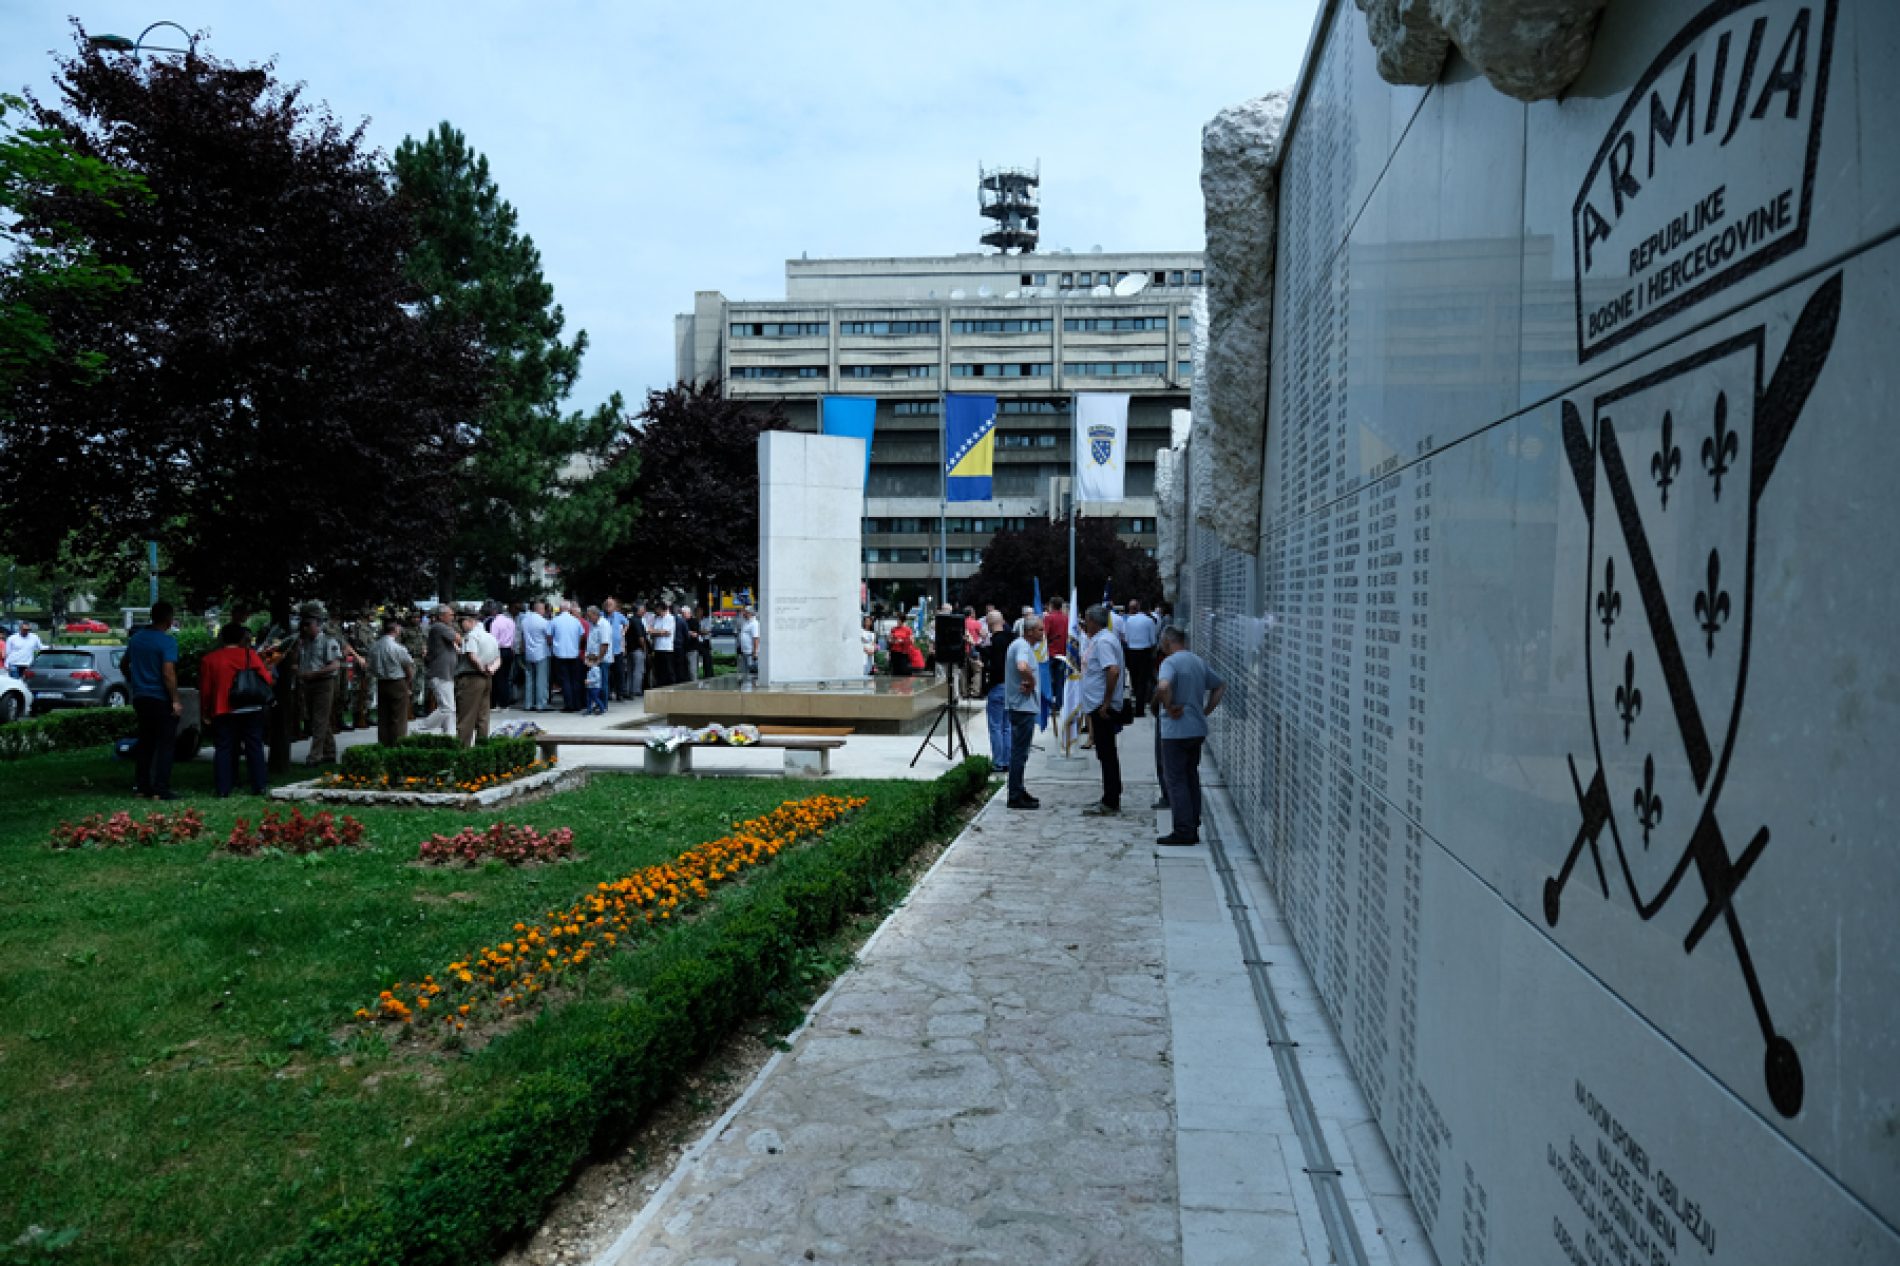 Obilježena godišnjica pogibije heroja bosanske odbrane komandanta Safeta Zajke